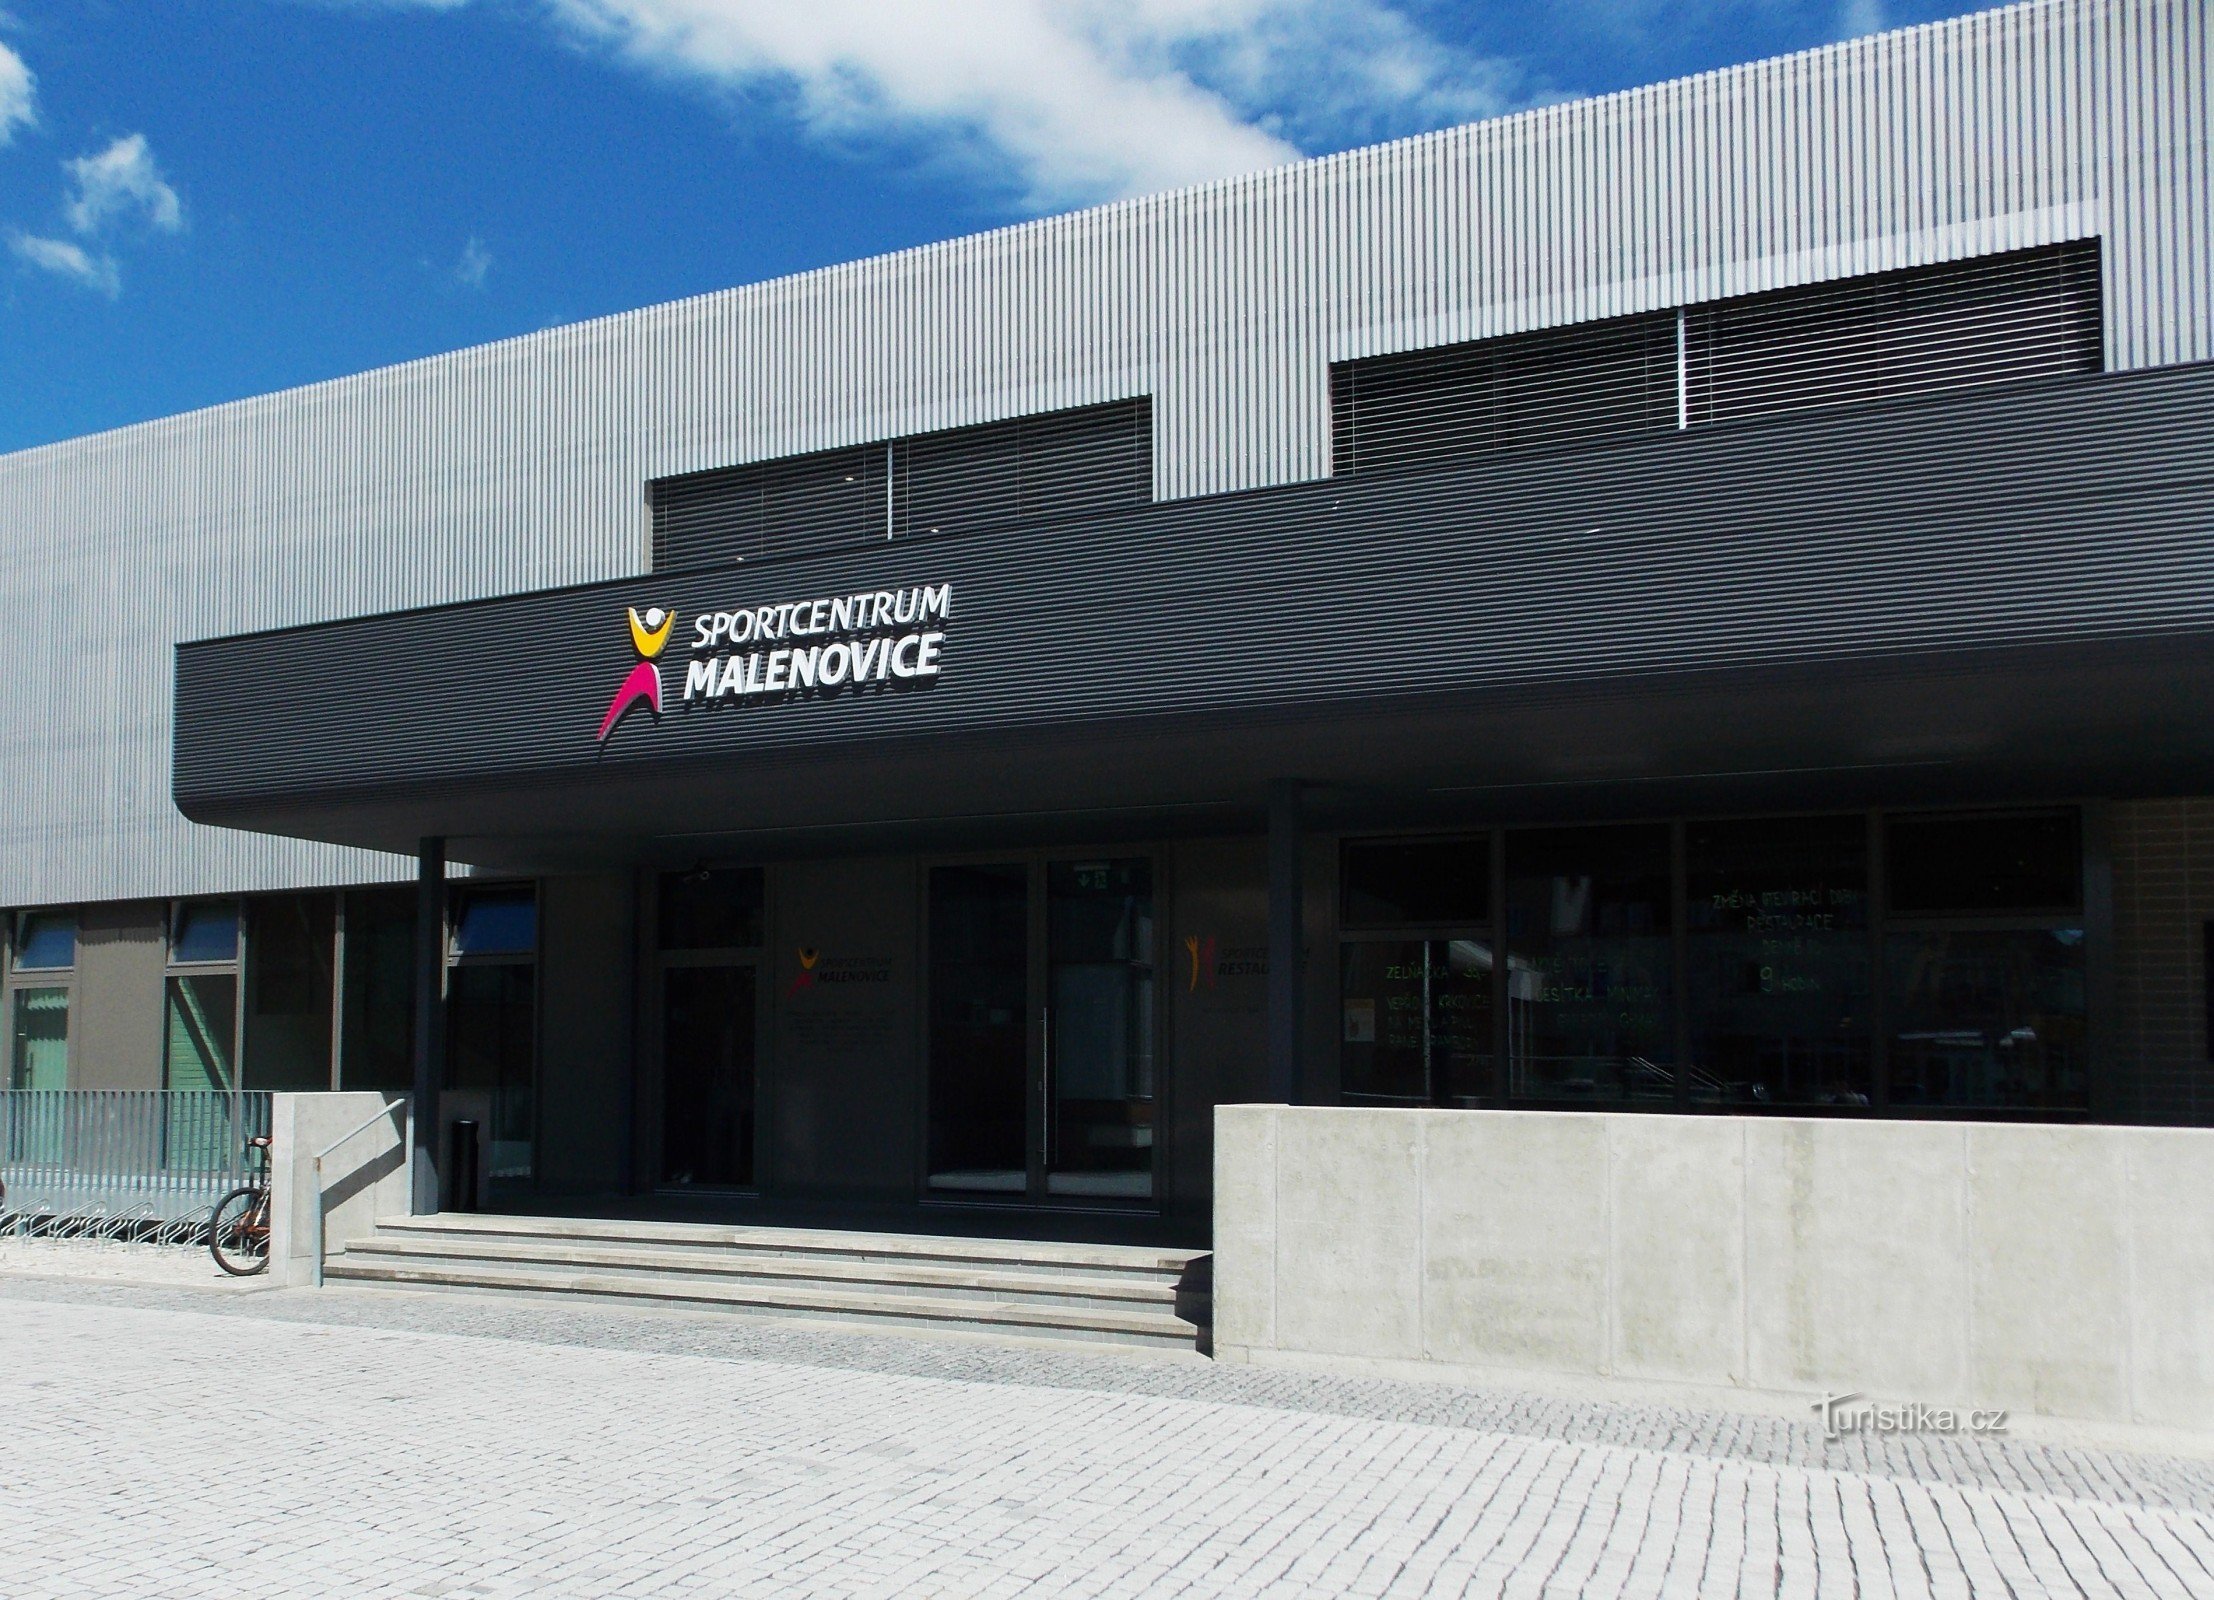 Новый спортивный центр с рестораном в Маленовицах недалеко от Злина